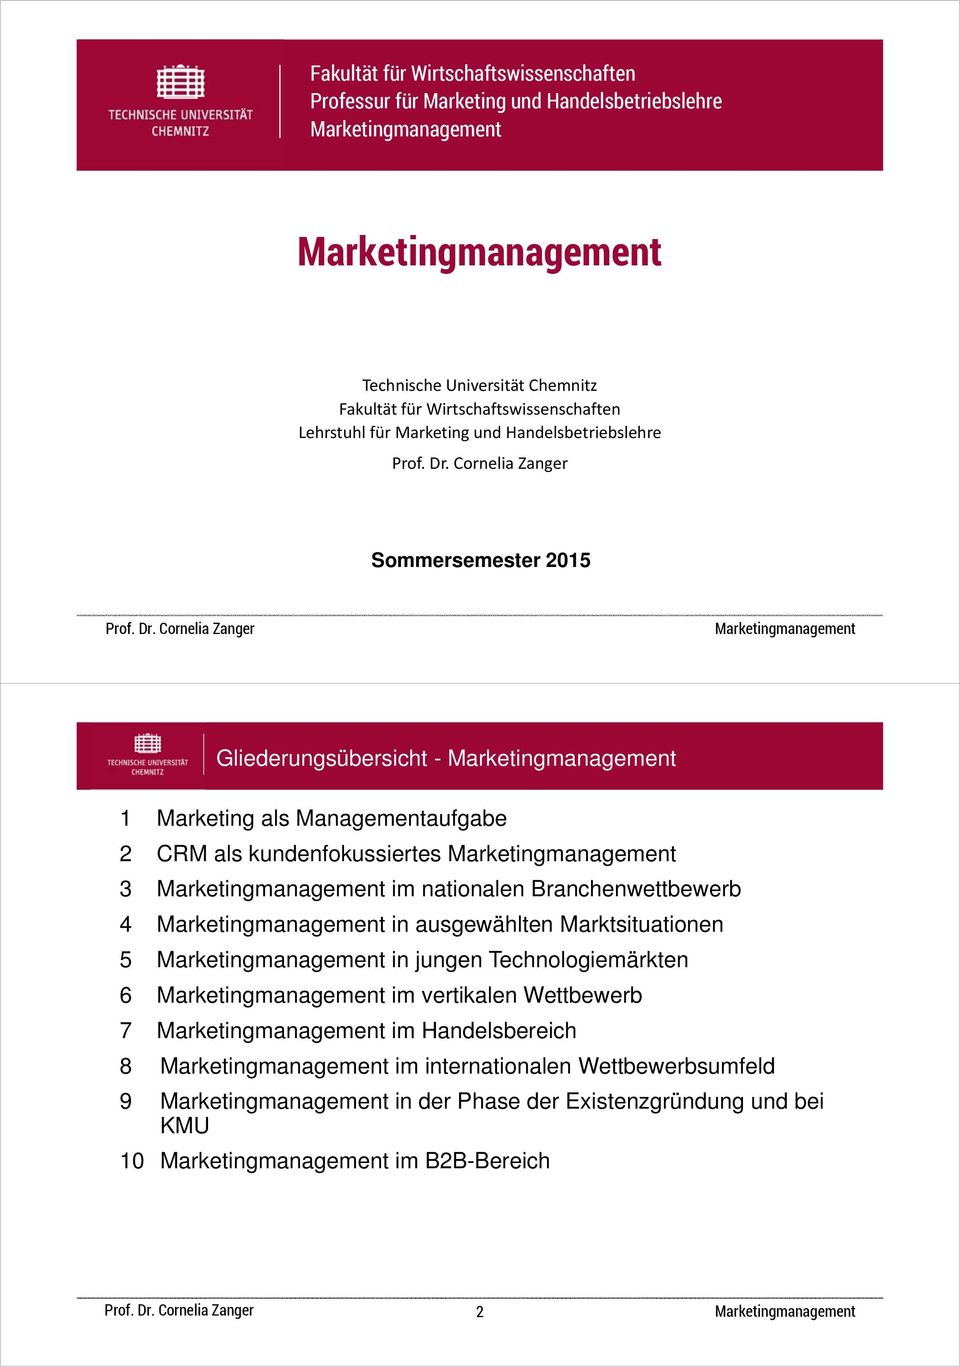 Managementaufgabe 2 CRM als kundenfokussiertes 3 im nationalen Branchenwettbewerb 4 in ausgewählten Marktsituationen 5 in jungen